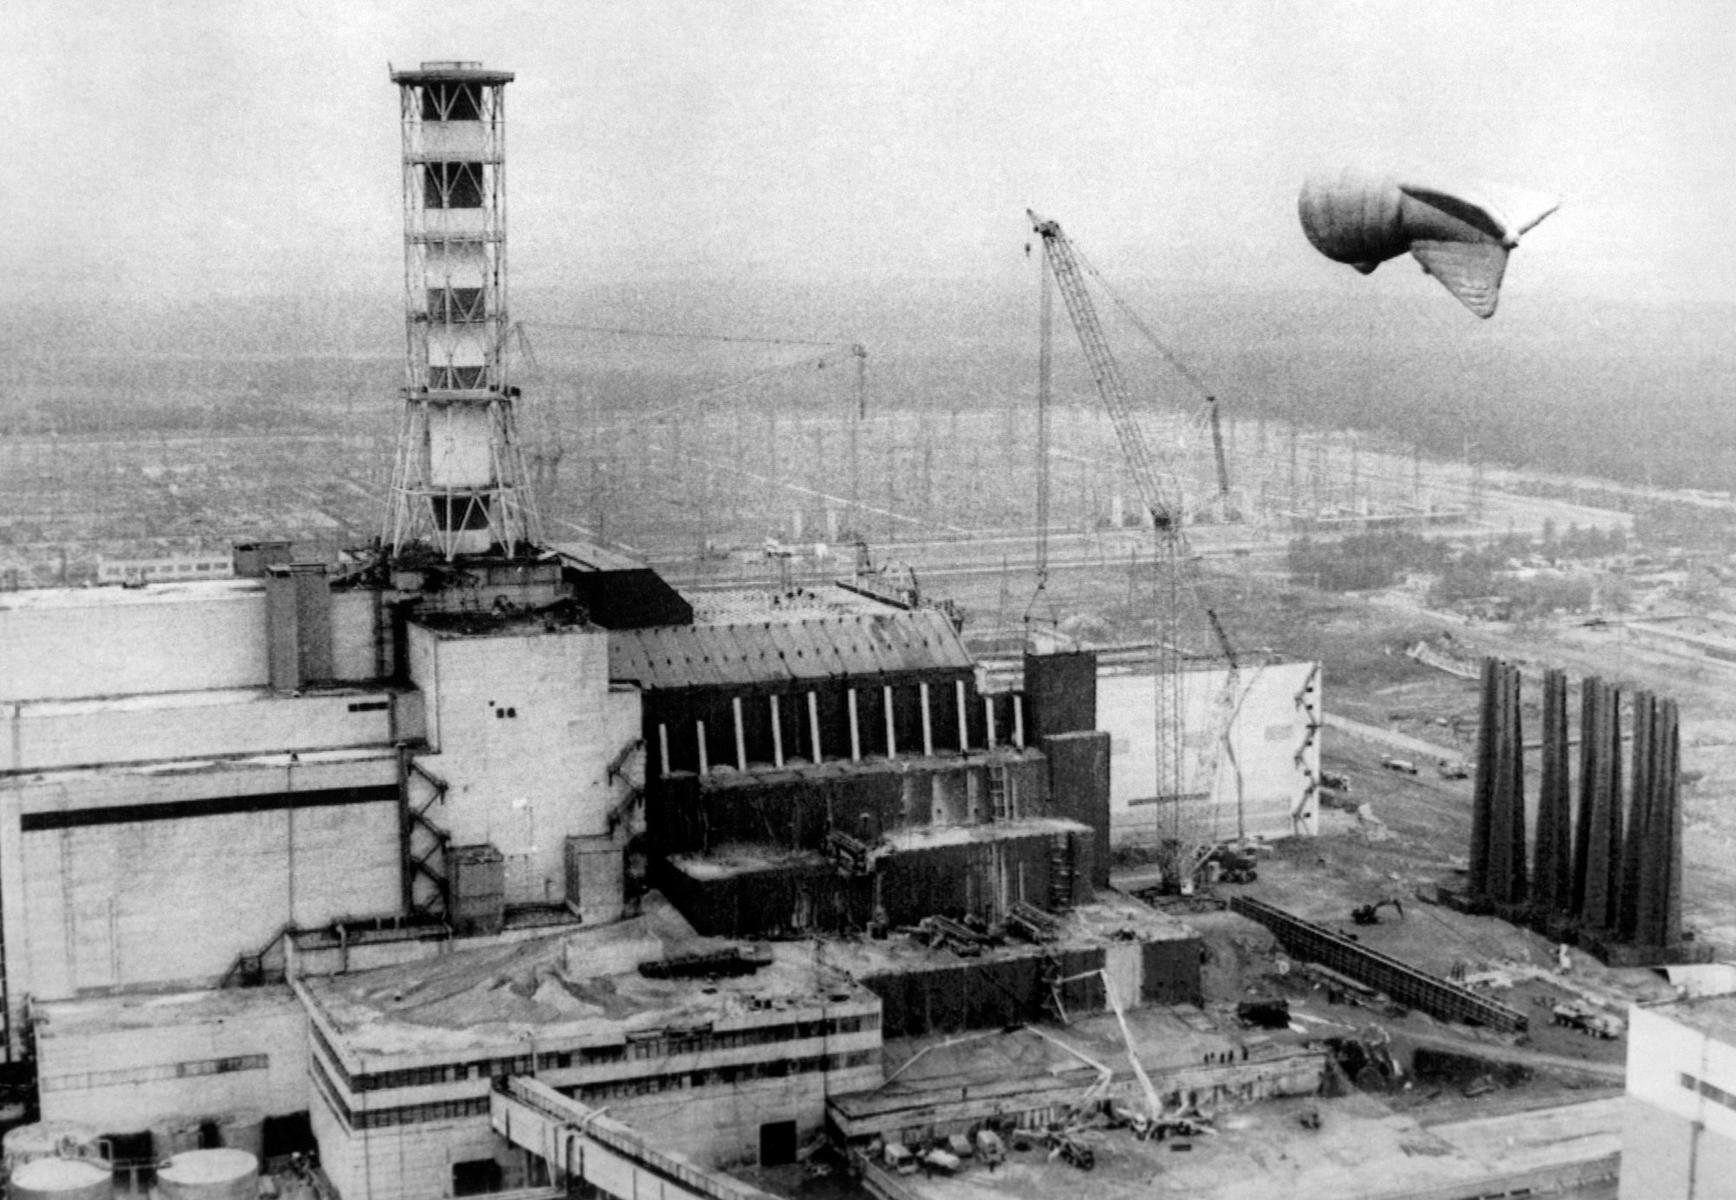 Строительство бетонного защитного саркофага «Укрытие» над разрушенным 4-ым энергоблоком Чернобыльской атомной электространции после аварии, произошедшей 26 апреля 1986 года. Точная дата съемки не установлена. Фото: Валерий Зуфаров / ТАСС